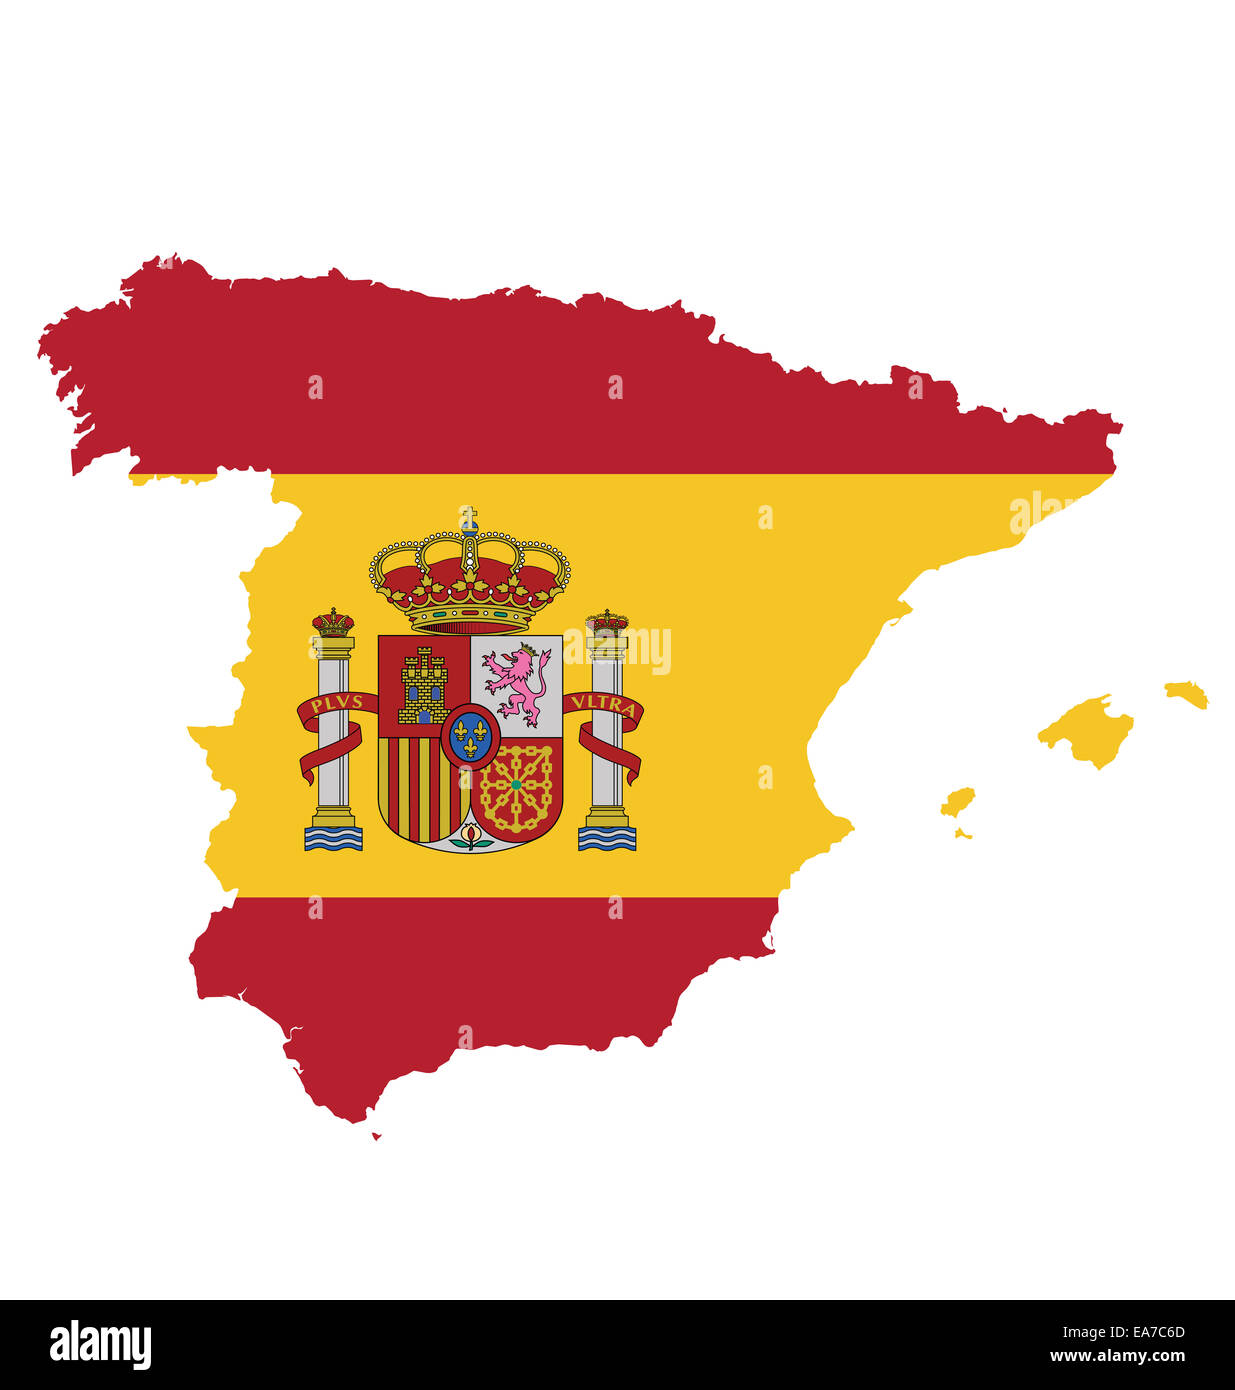 Flagge mit Wappen des Königreichs Spanien überlagert ...